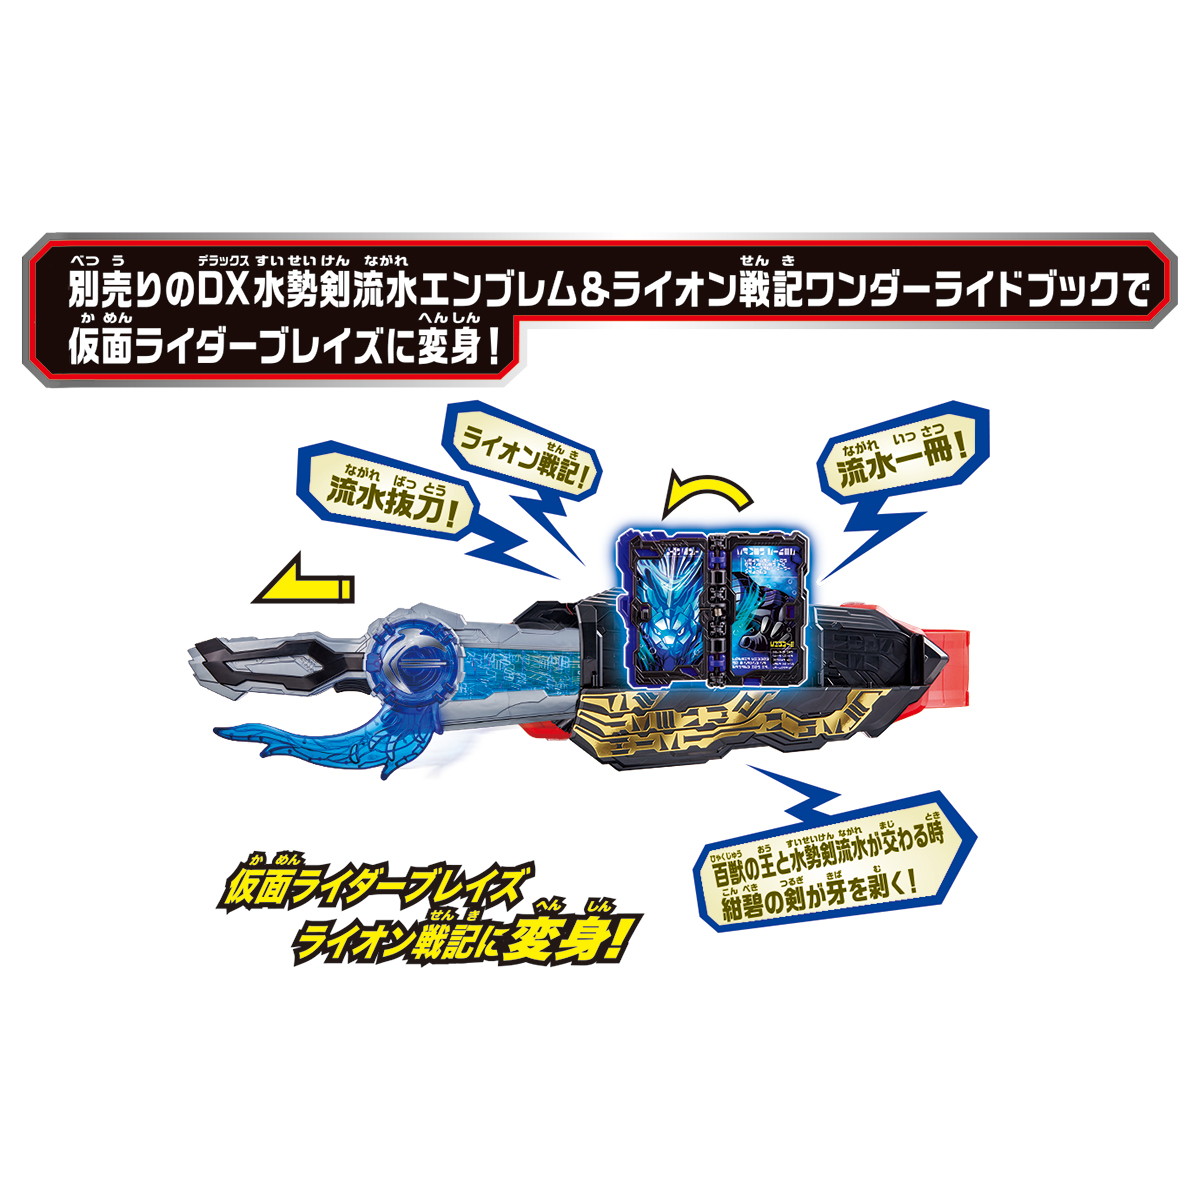 変身ベルト『DX聖剣ソードライバー』仮面ライダーセイバー 変身なりきり-009